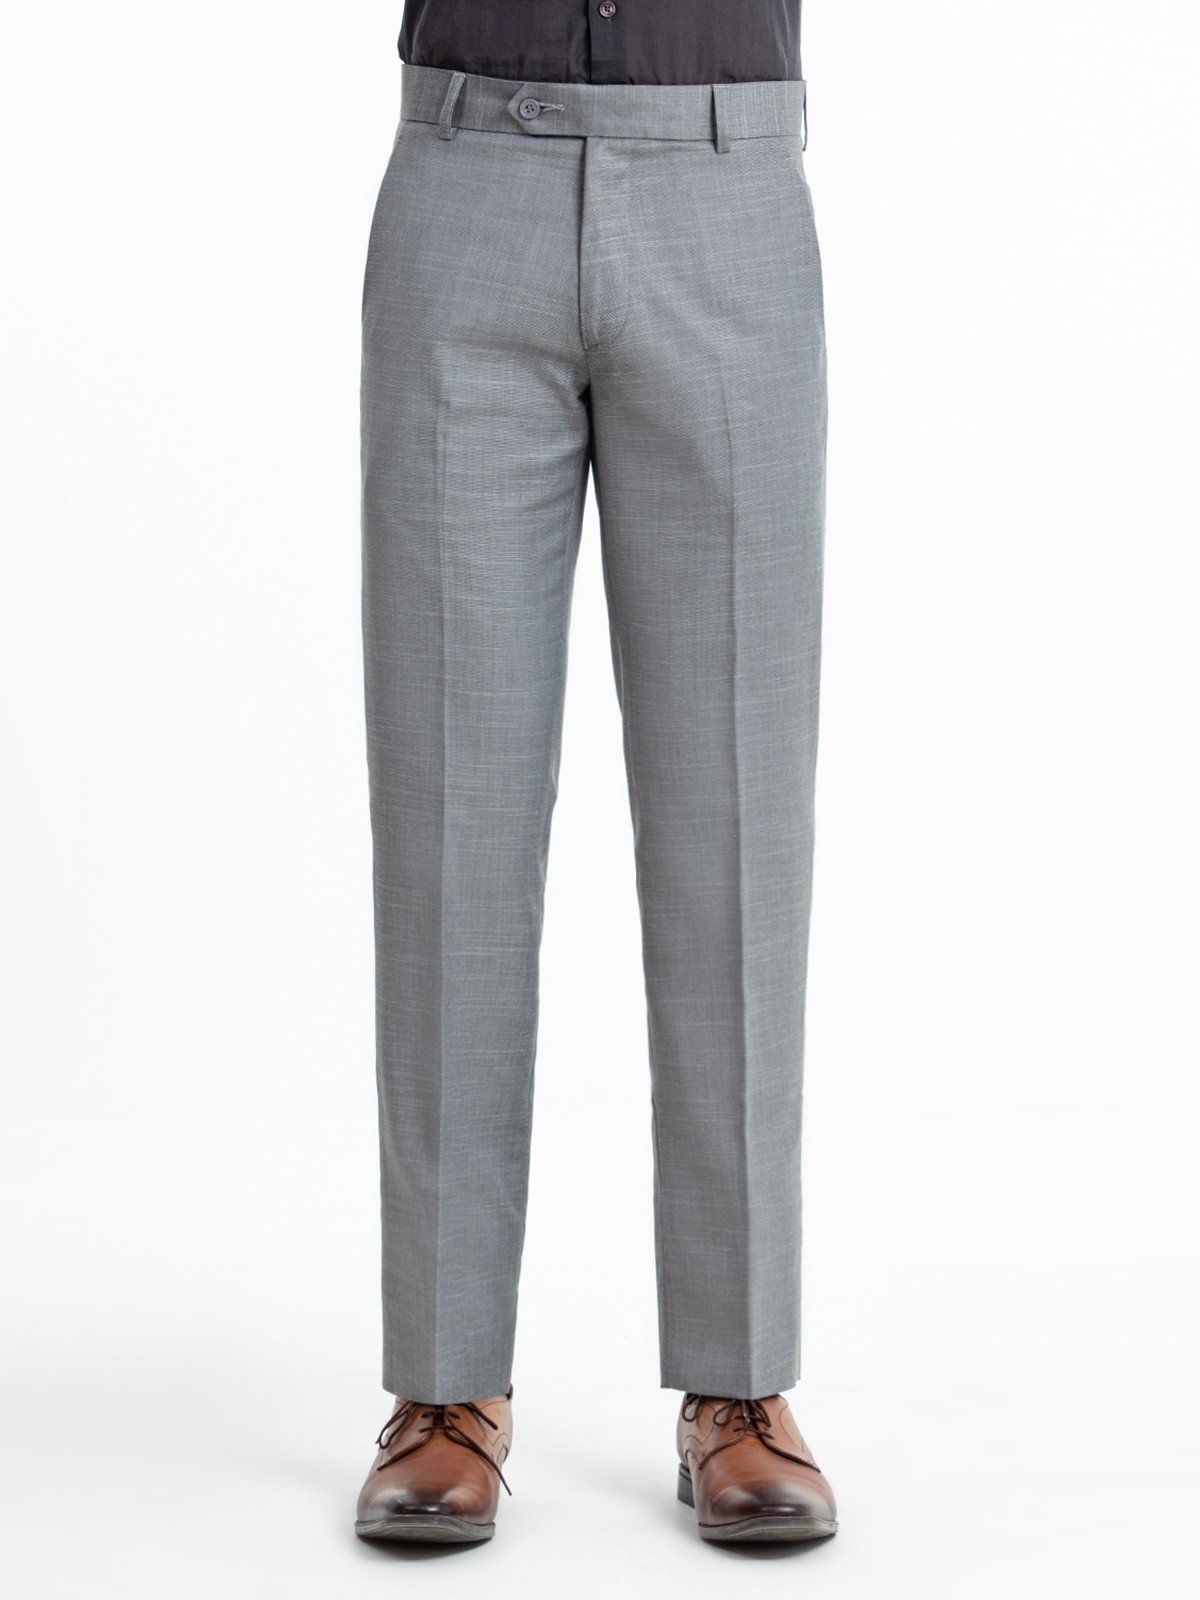 Men's Light Grey Pant - EMBPF22-15244